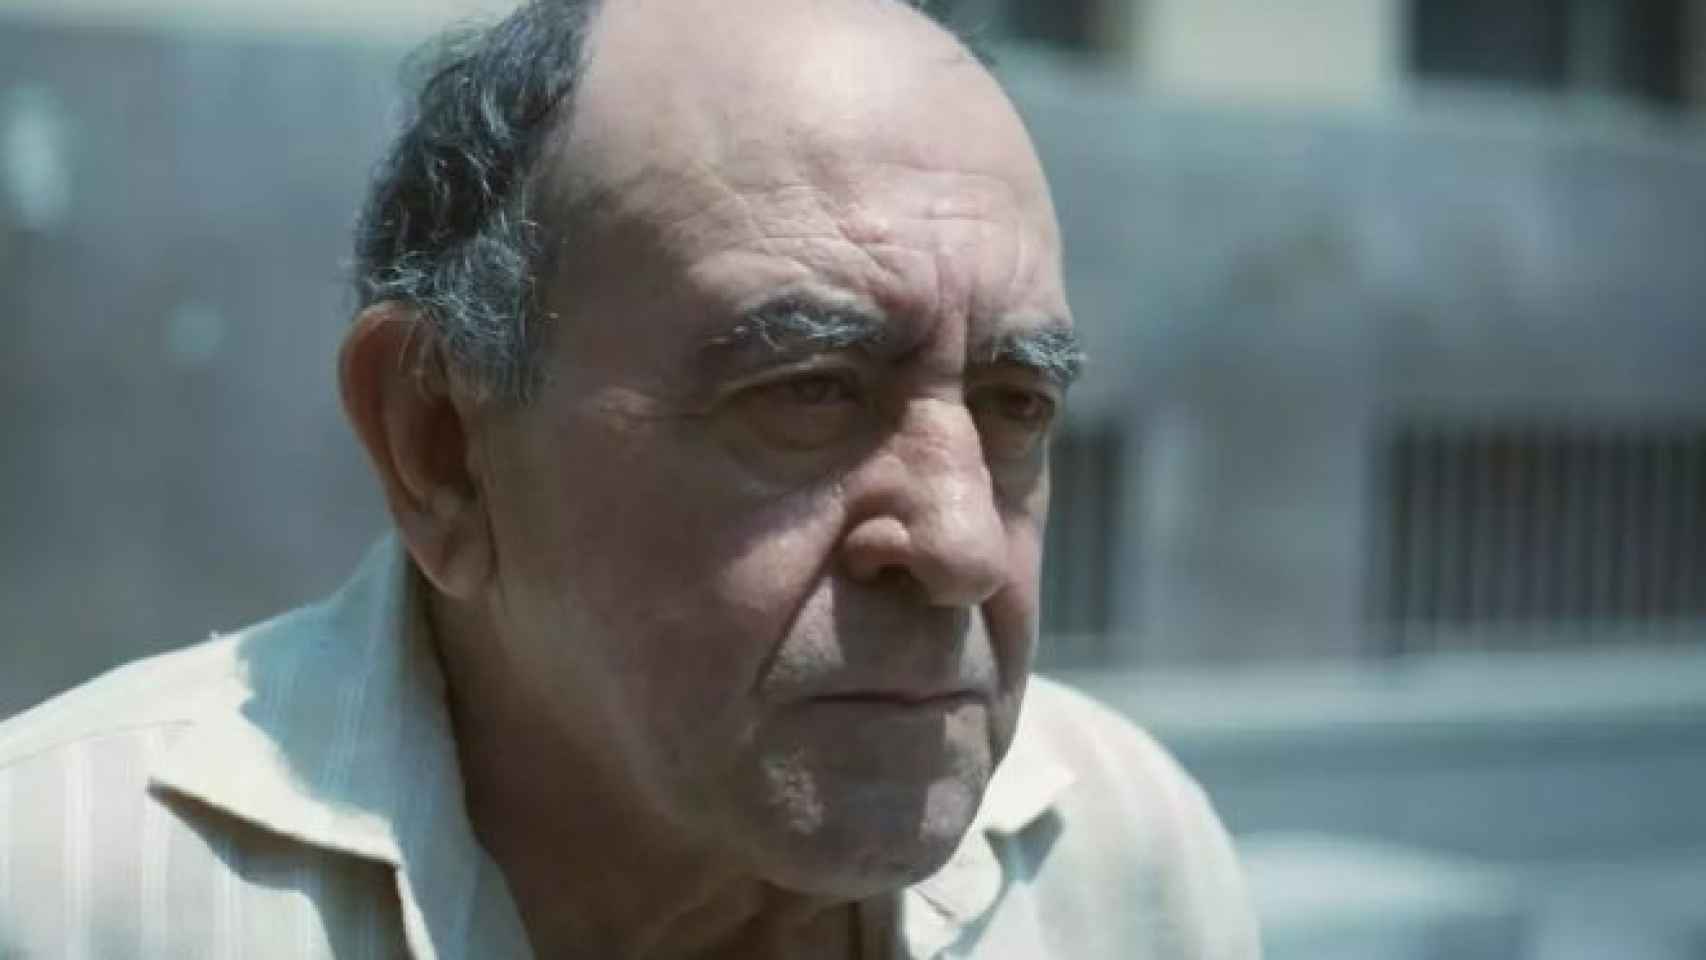 Muere el actor Pep Cortés a los 74 años